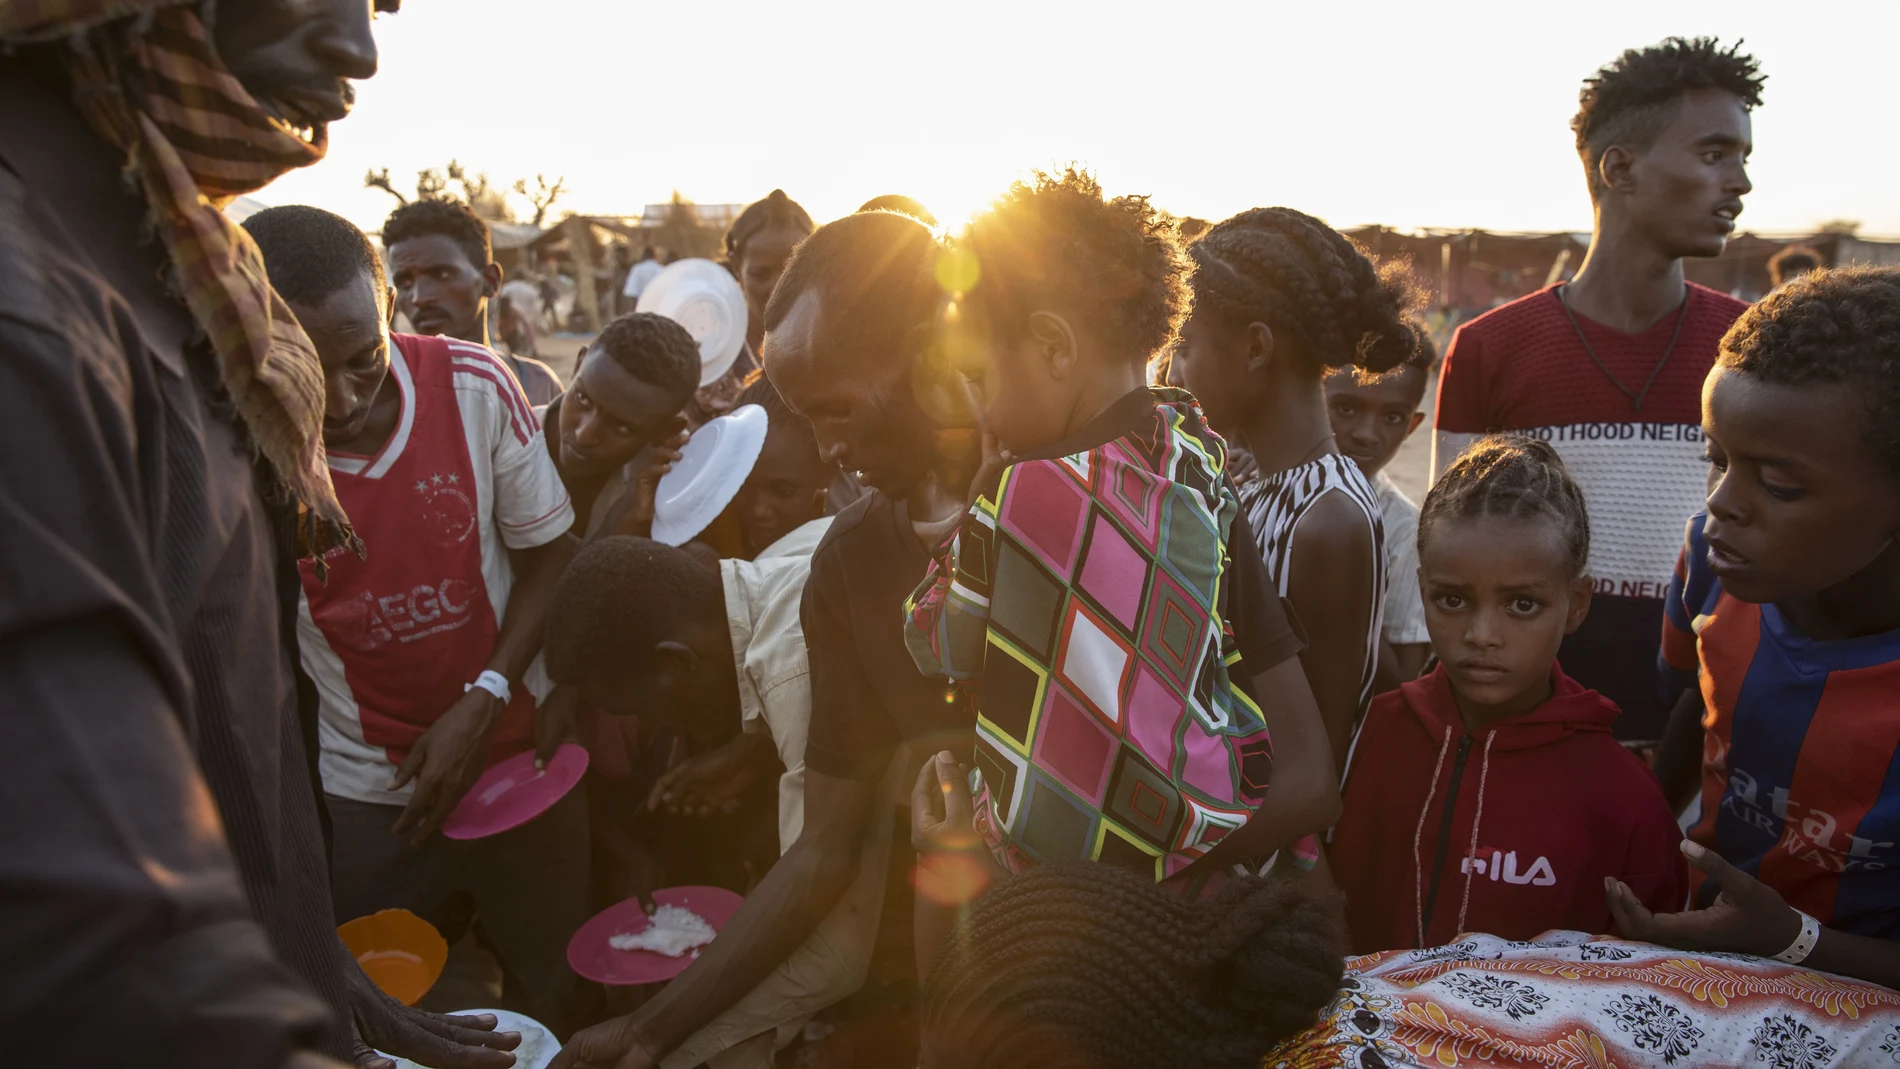 Refugiados de Tigray que huyeron del conflicto en la región de Tigray de Etiopía, esperan a que voluntarios locales sudaneses les sirvan arroz cocido en el campamento de refugiados de Um Rakuba en Qadarif, en el este de Sudán